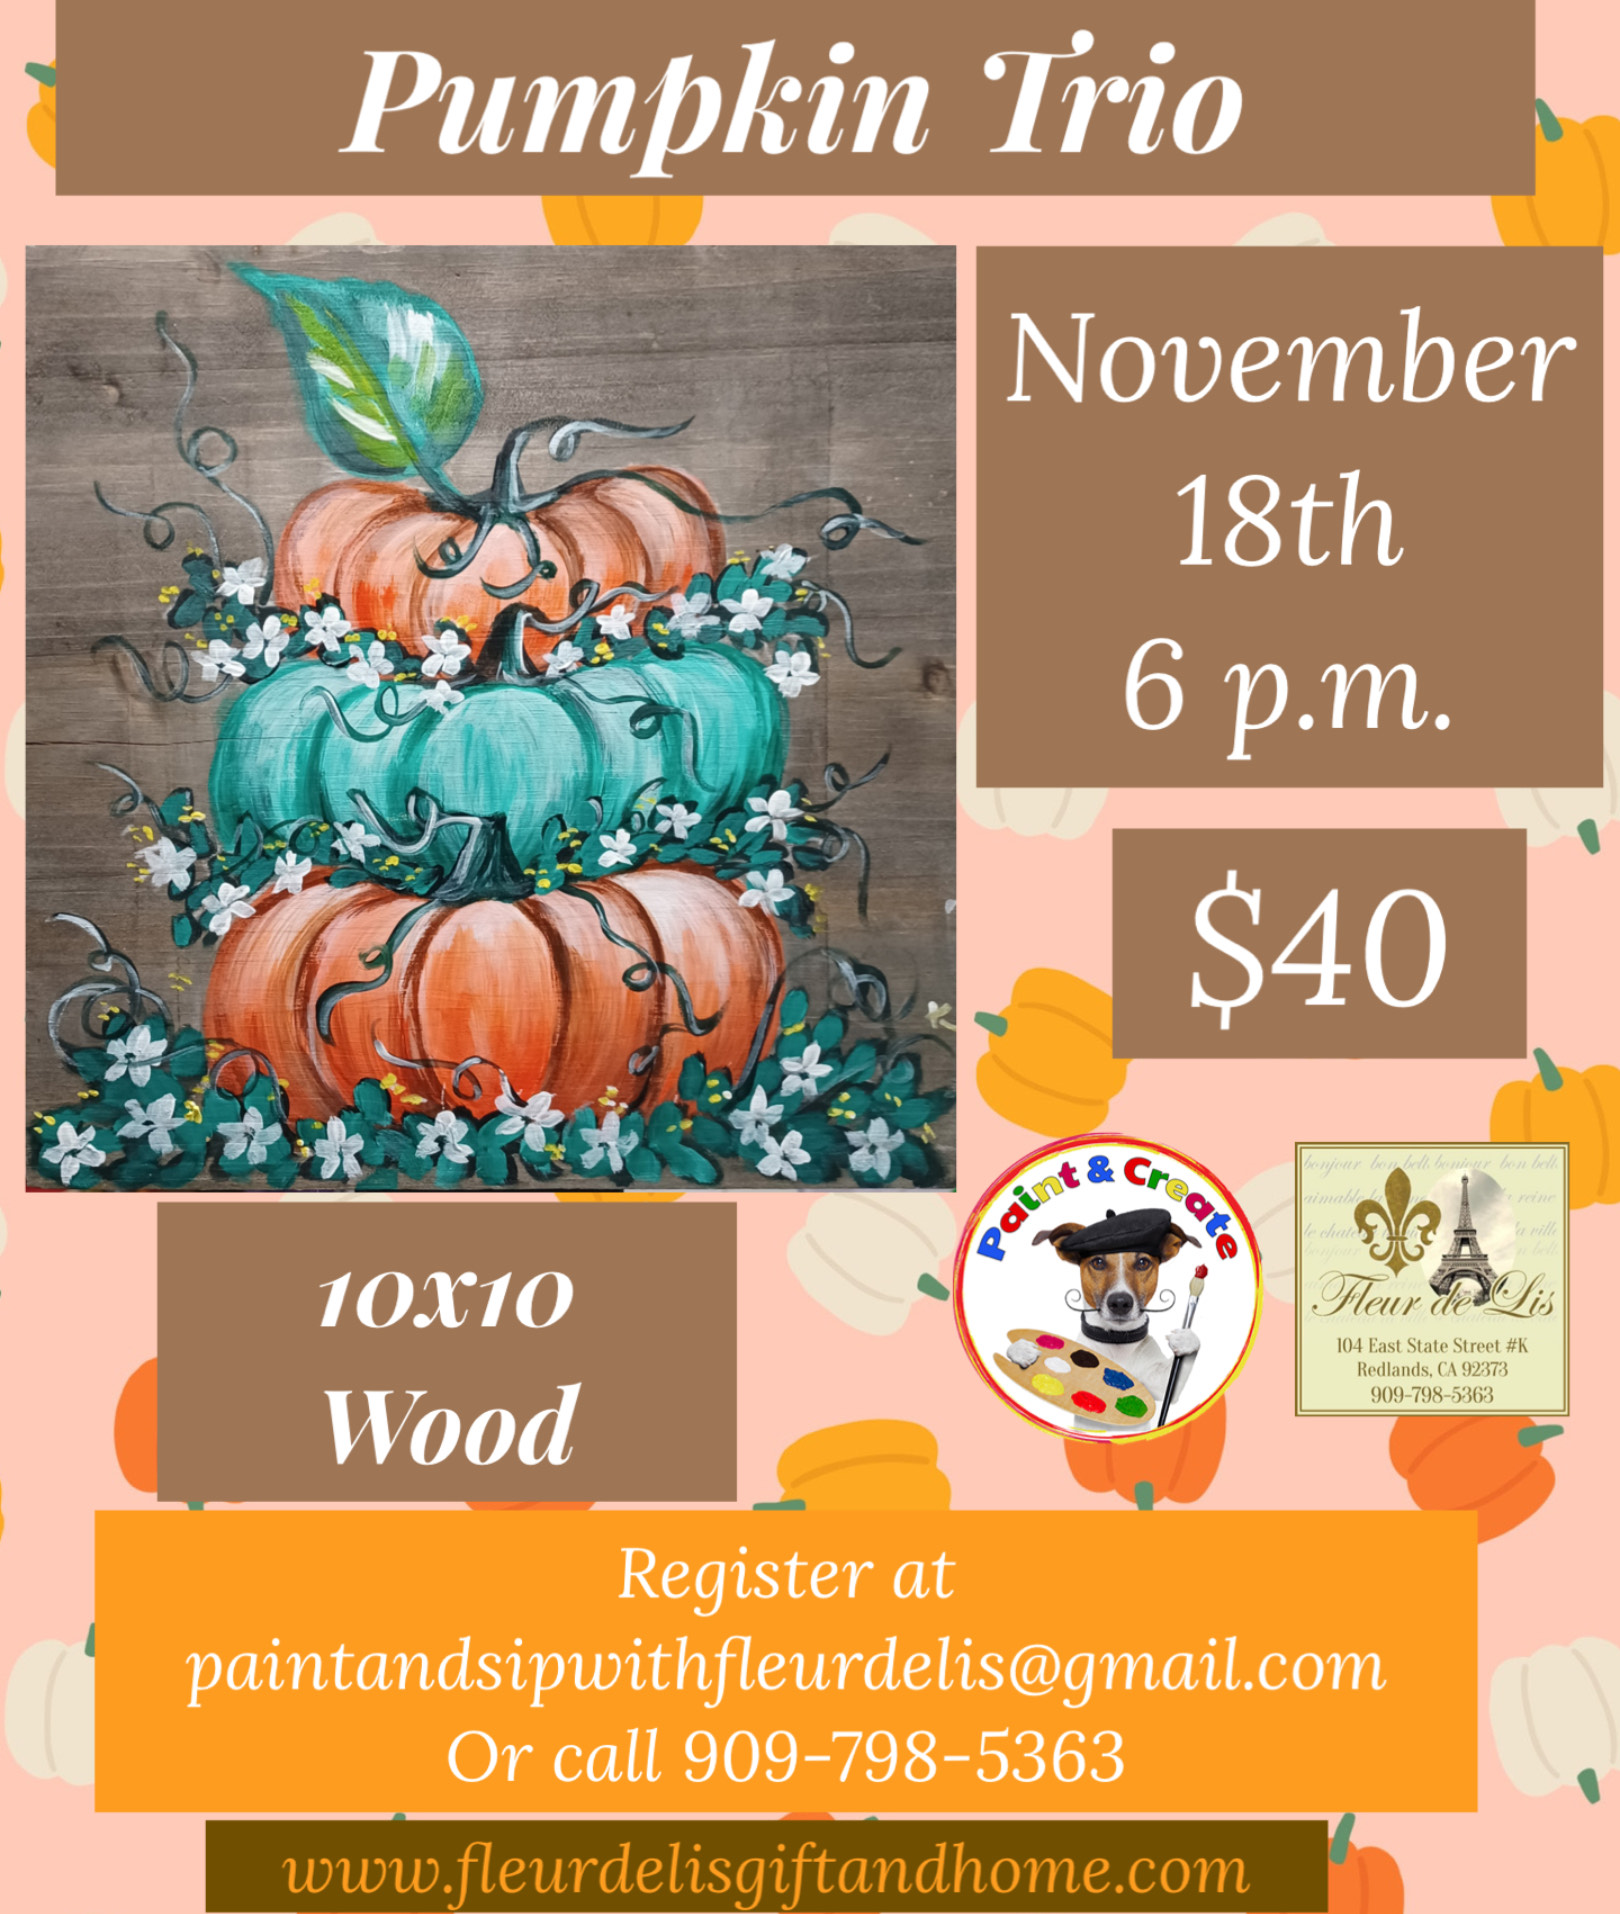 Pumpkin Trio November 18th 6 p.m.